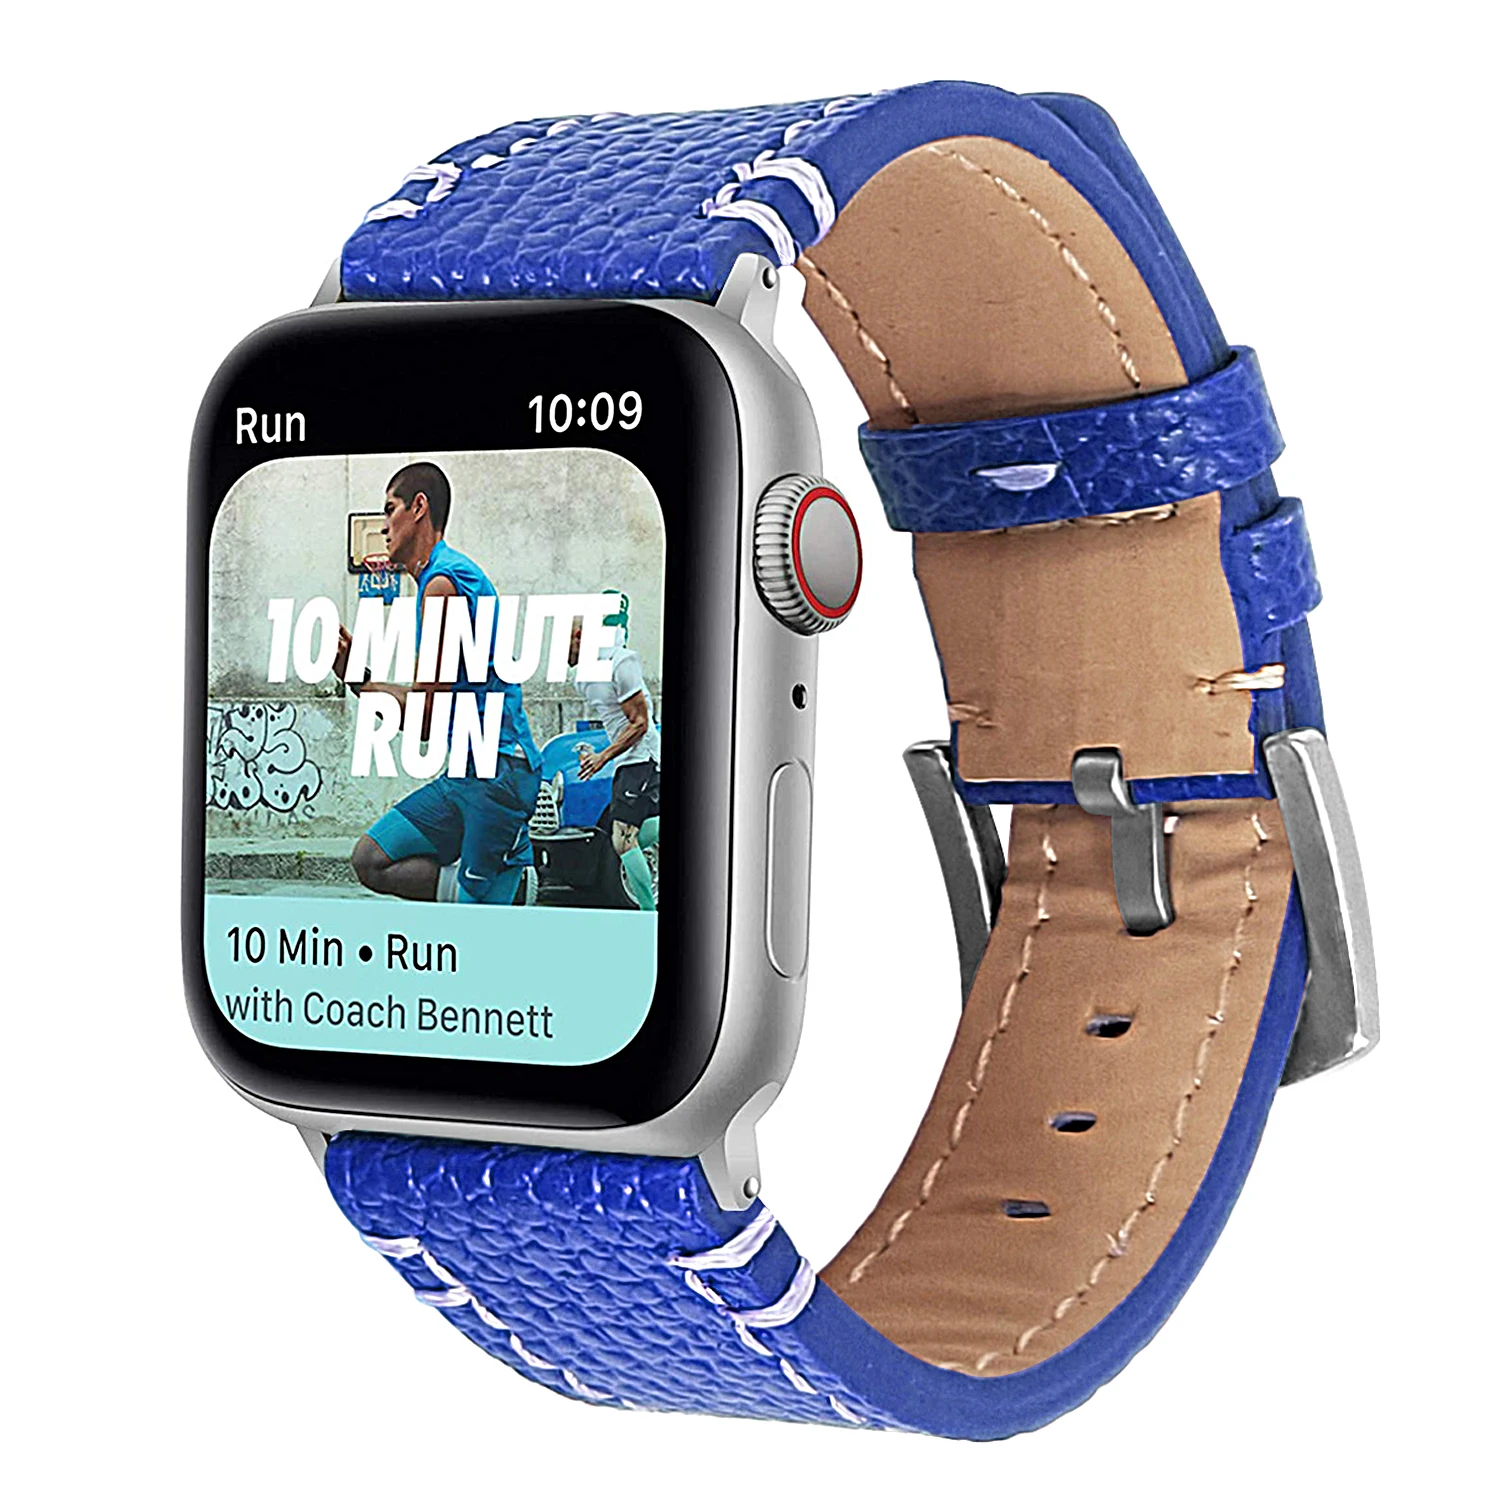 Высокое качество кожаный ремешок для наручных часов для Apple Watch, версия 1, 2, 3, 42 мм, 38 мм, версия браслет ремешок для наручных часов iwatch серии 5 4 40 мм 44 мм